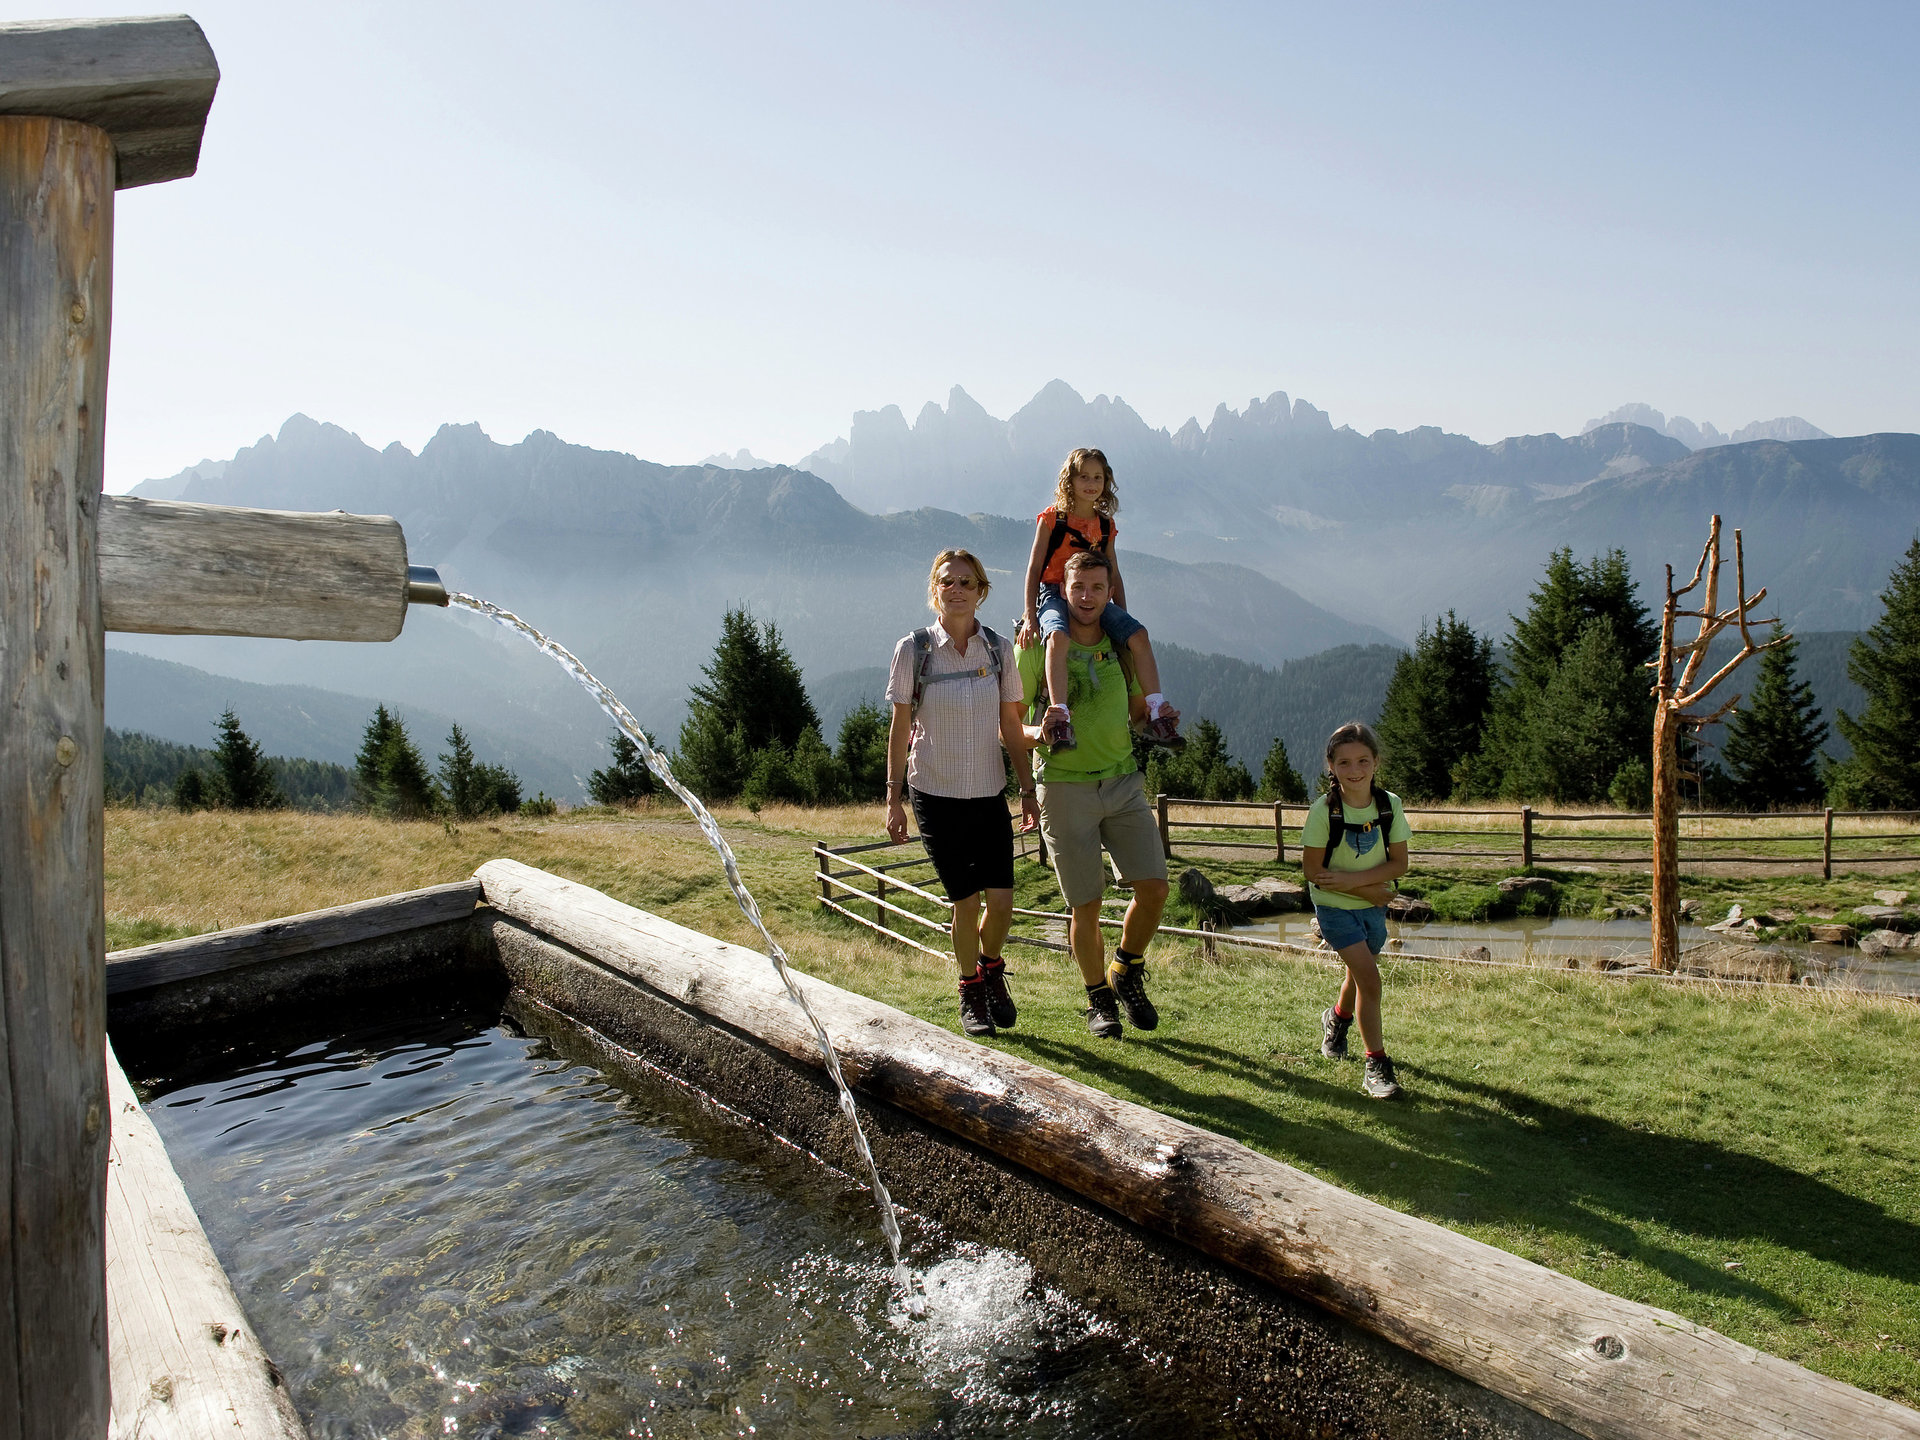 Durante le escursioni per famiglie in Alto Adige, vi imbatterete spesso in fontane in legno che trasportano acqua fresca di sorgente di montagna.